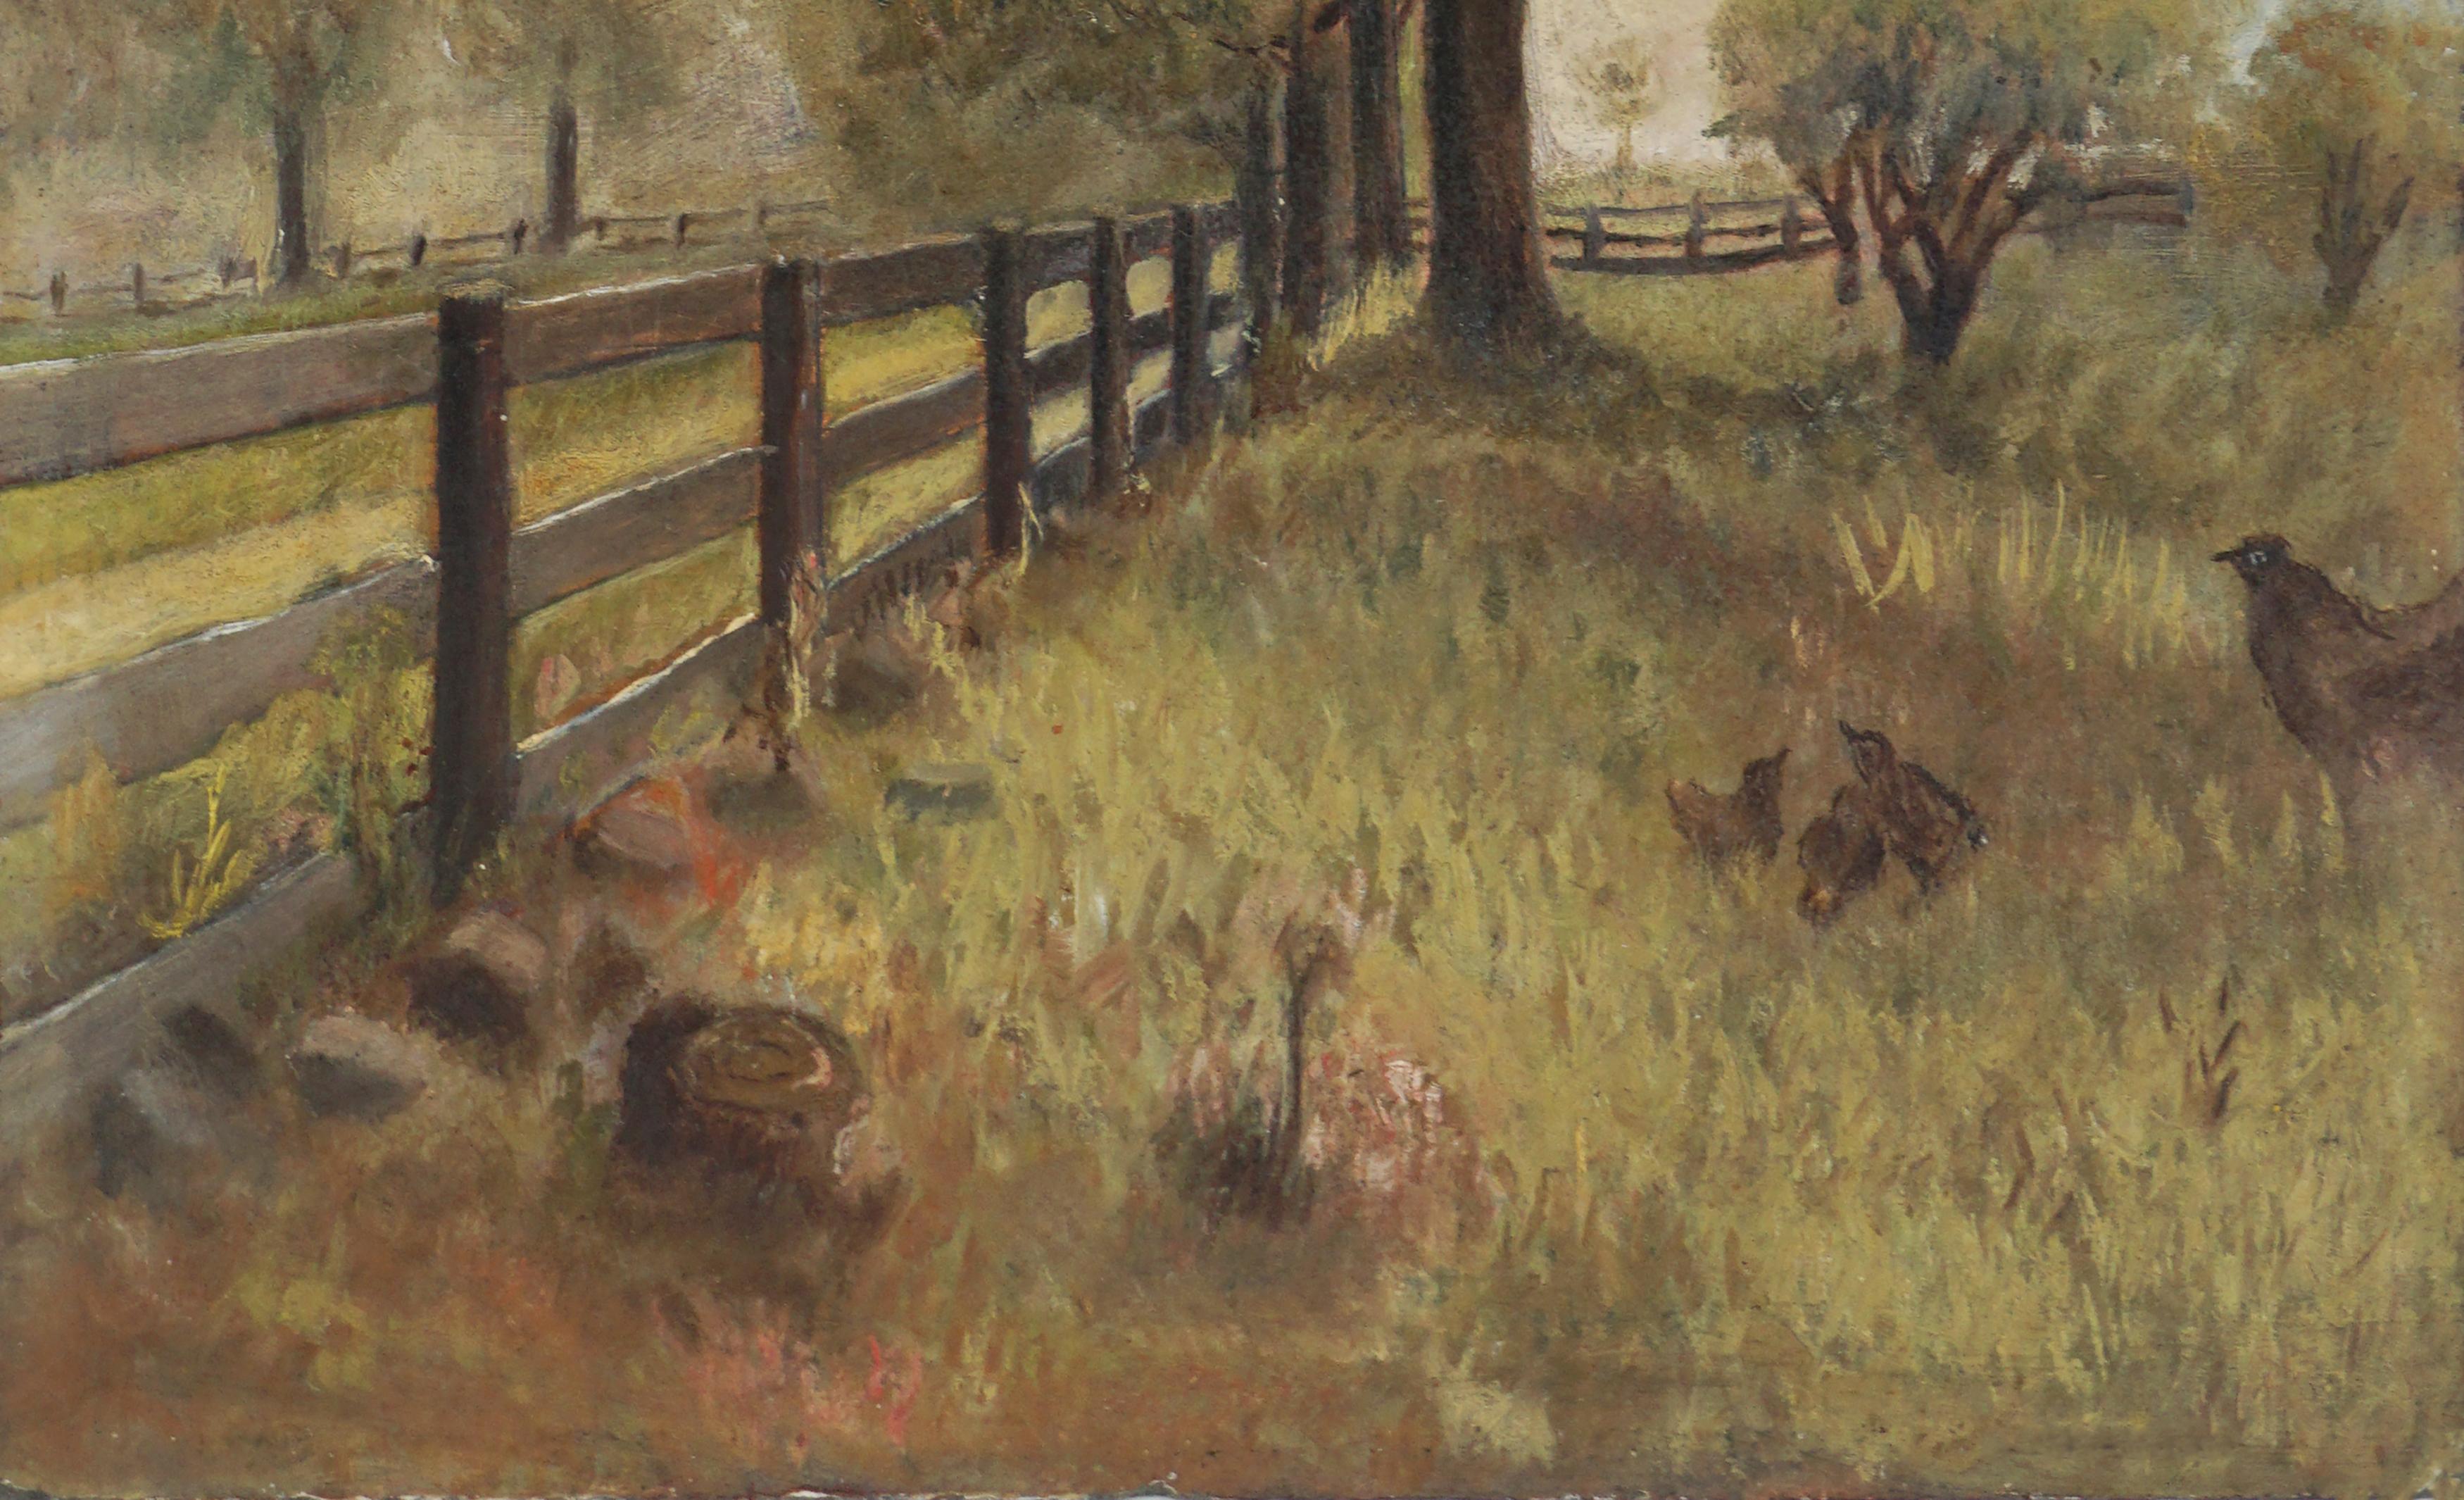 Début du 19e siècle  Paysage de campagne dans le style de William Morris Hunt - École de Barbizon Painting par Unknown